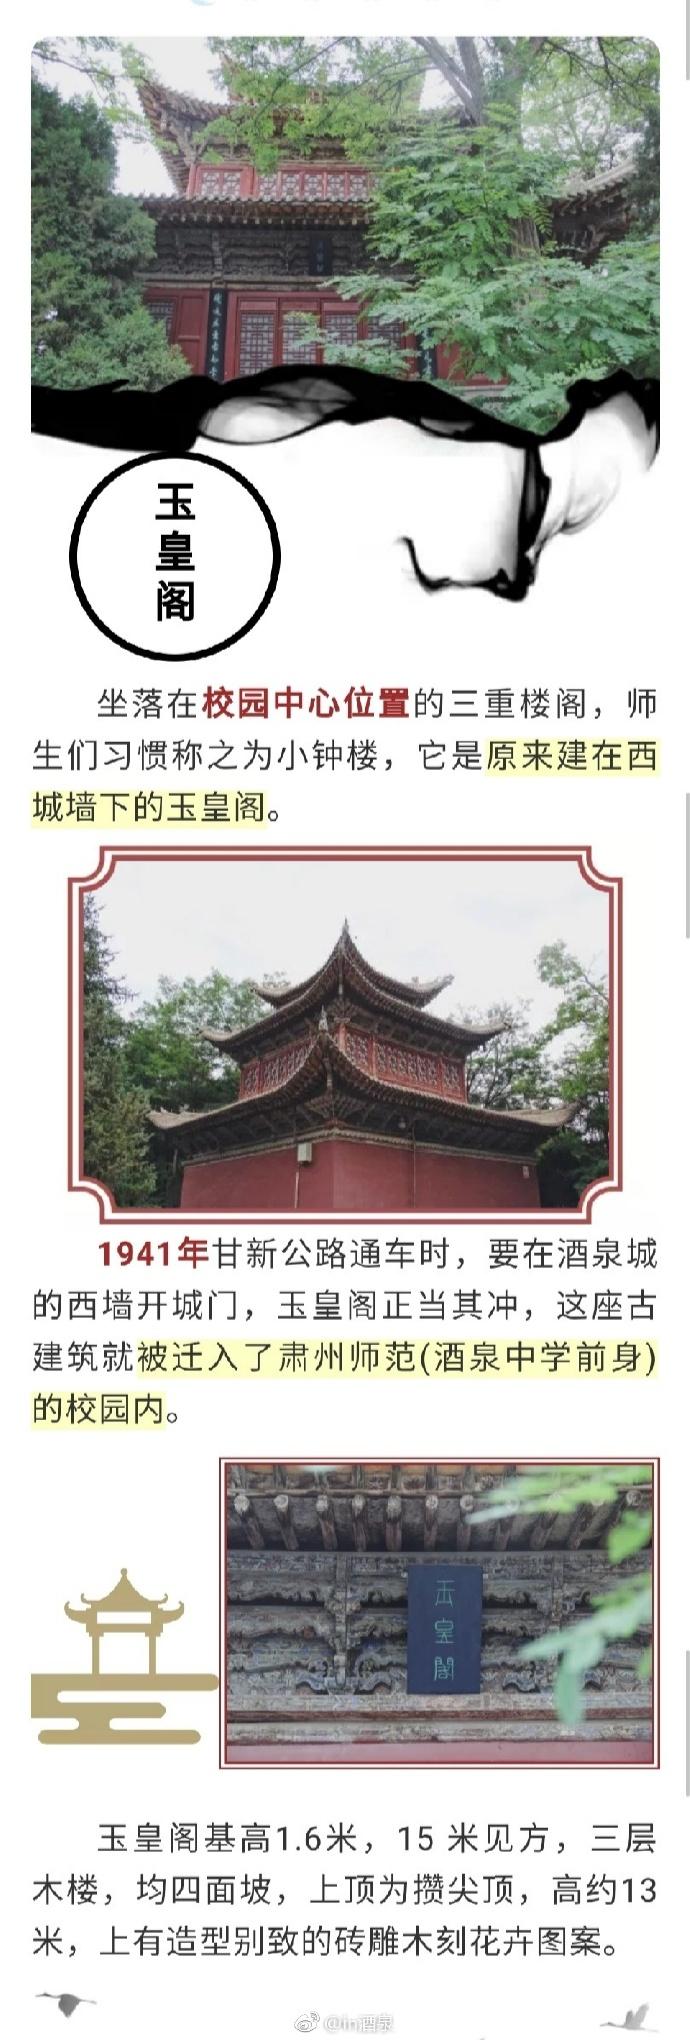 甘肃省酒泉中学历史悠久,环境幽雅,被称为钟灵毓秀,人文共萃的丝路